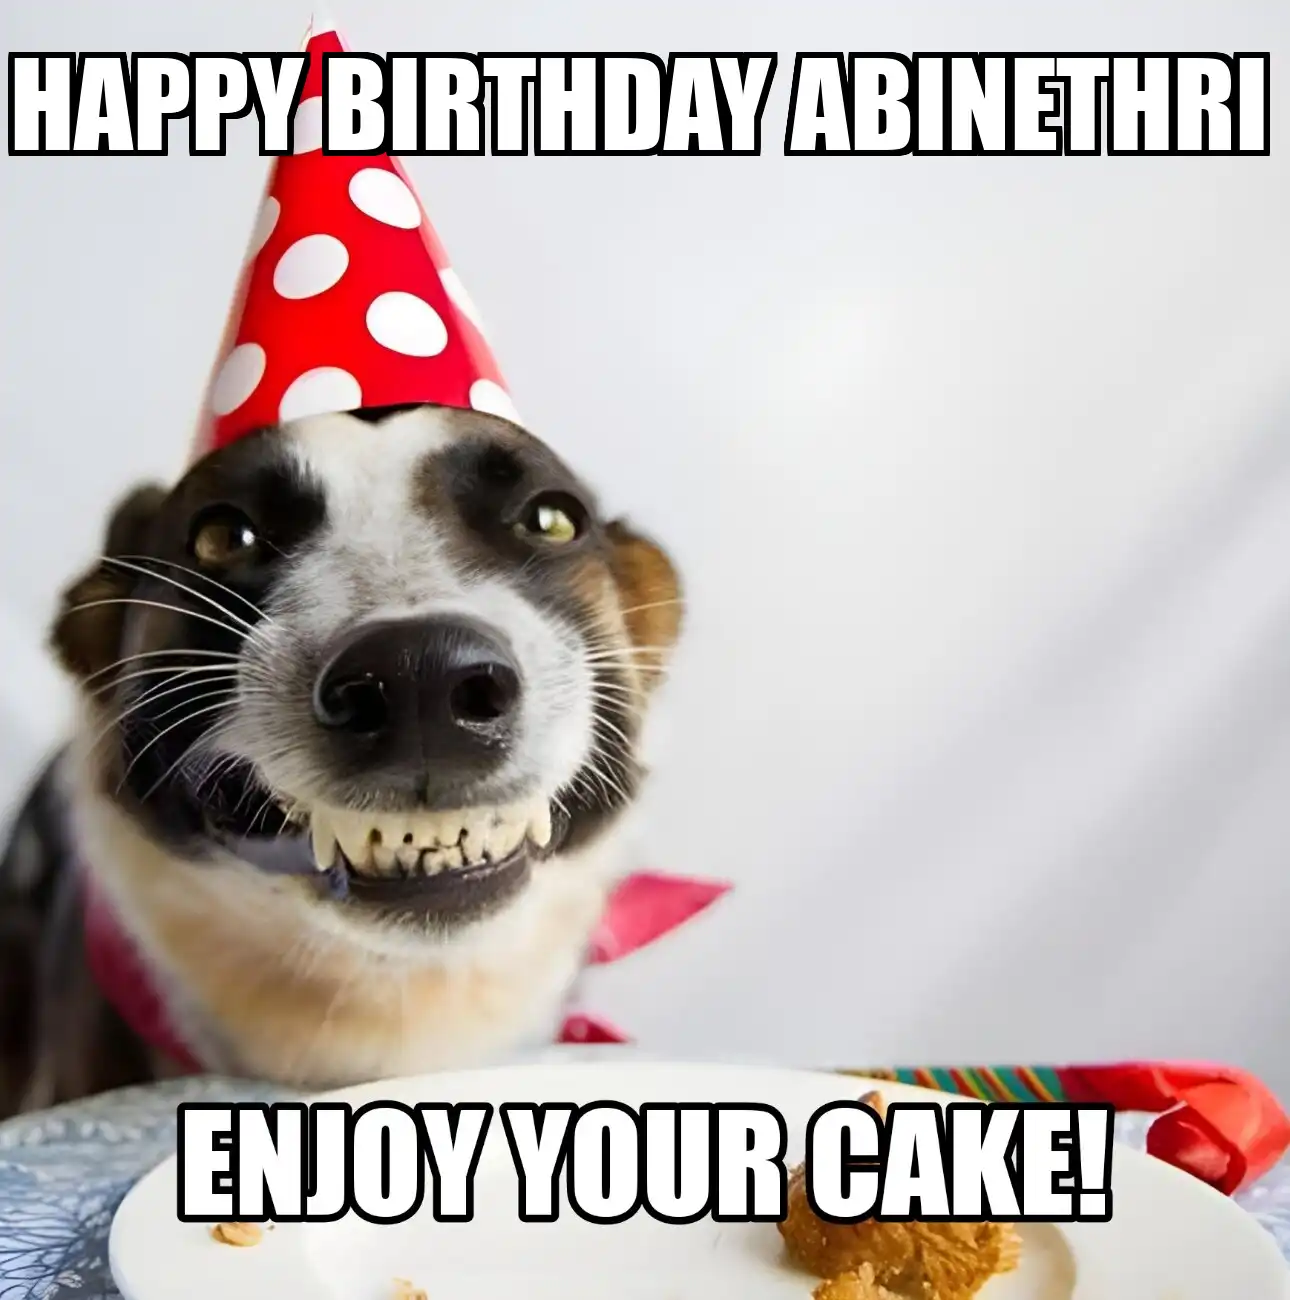 Happy Birthday Abinethri Enjoy Your Cake Dog Meme